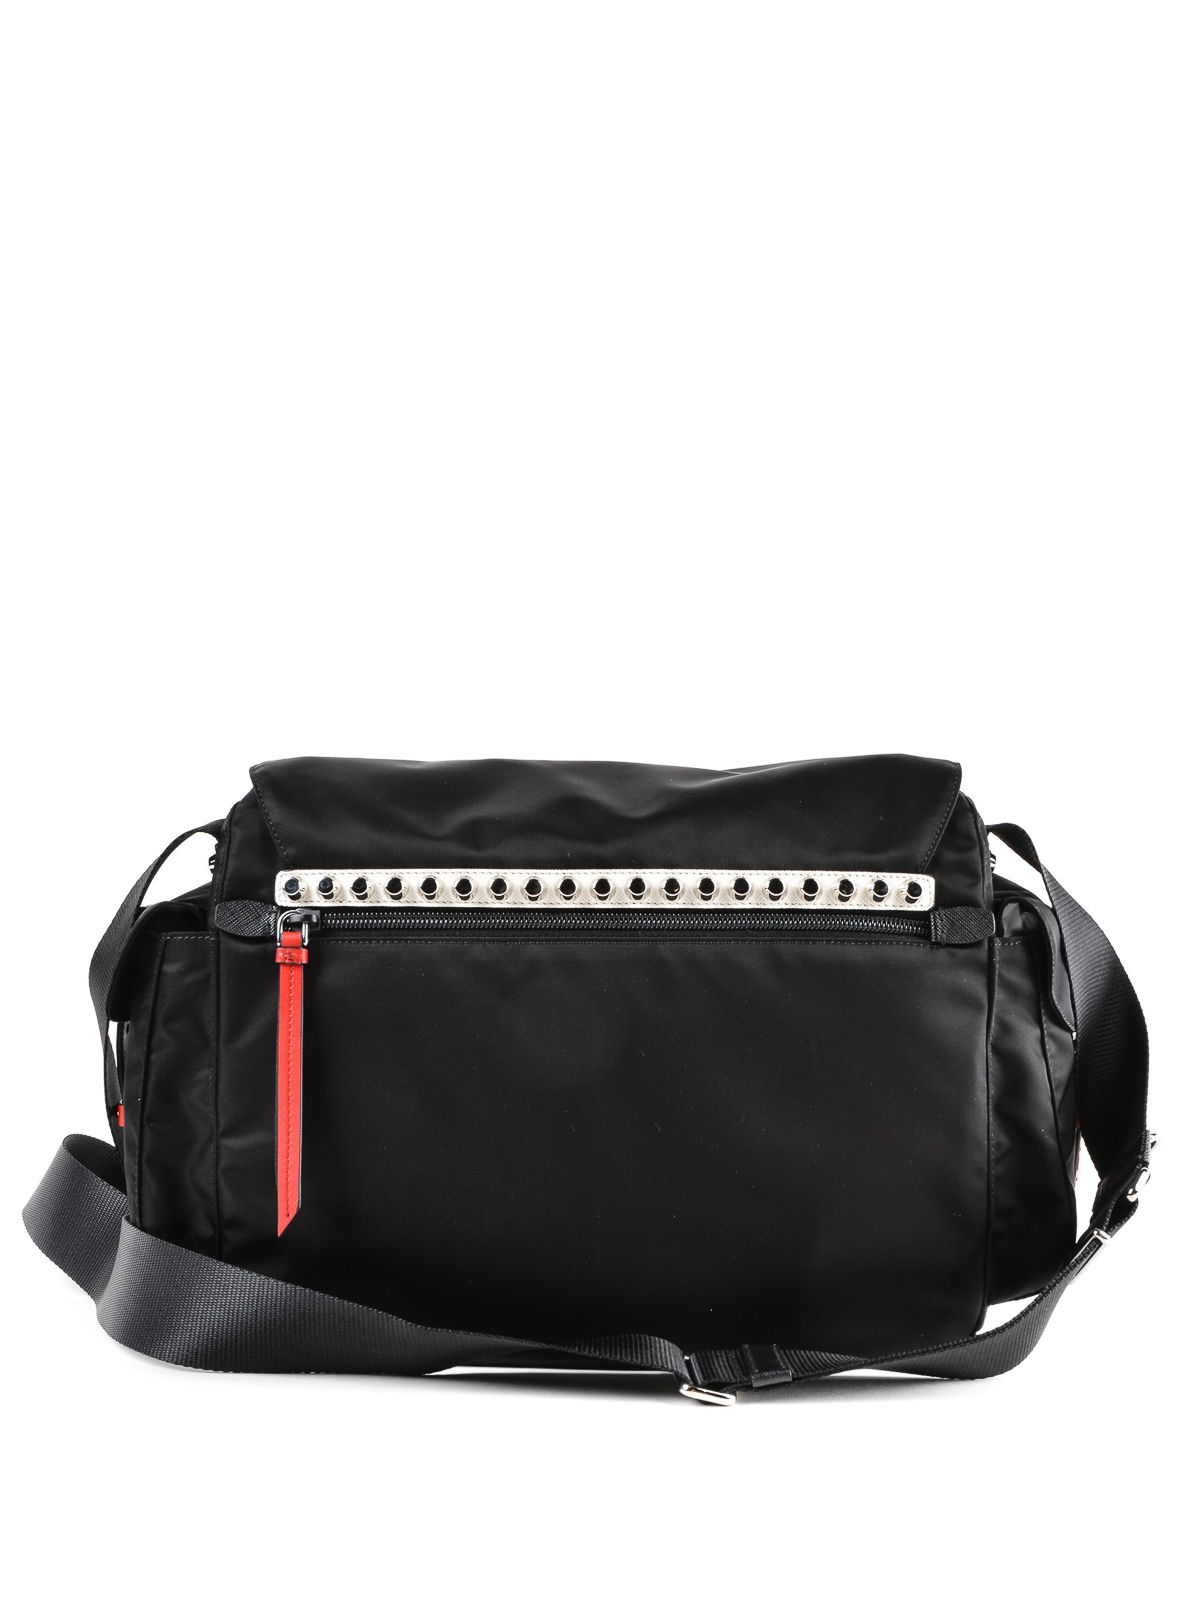 Prada Red/Black Nylon and Leather New Vela Studded Messenger Bag